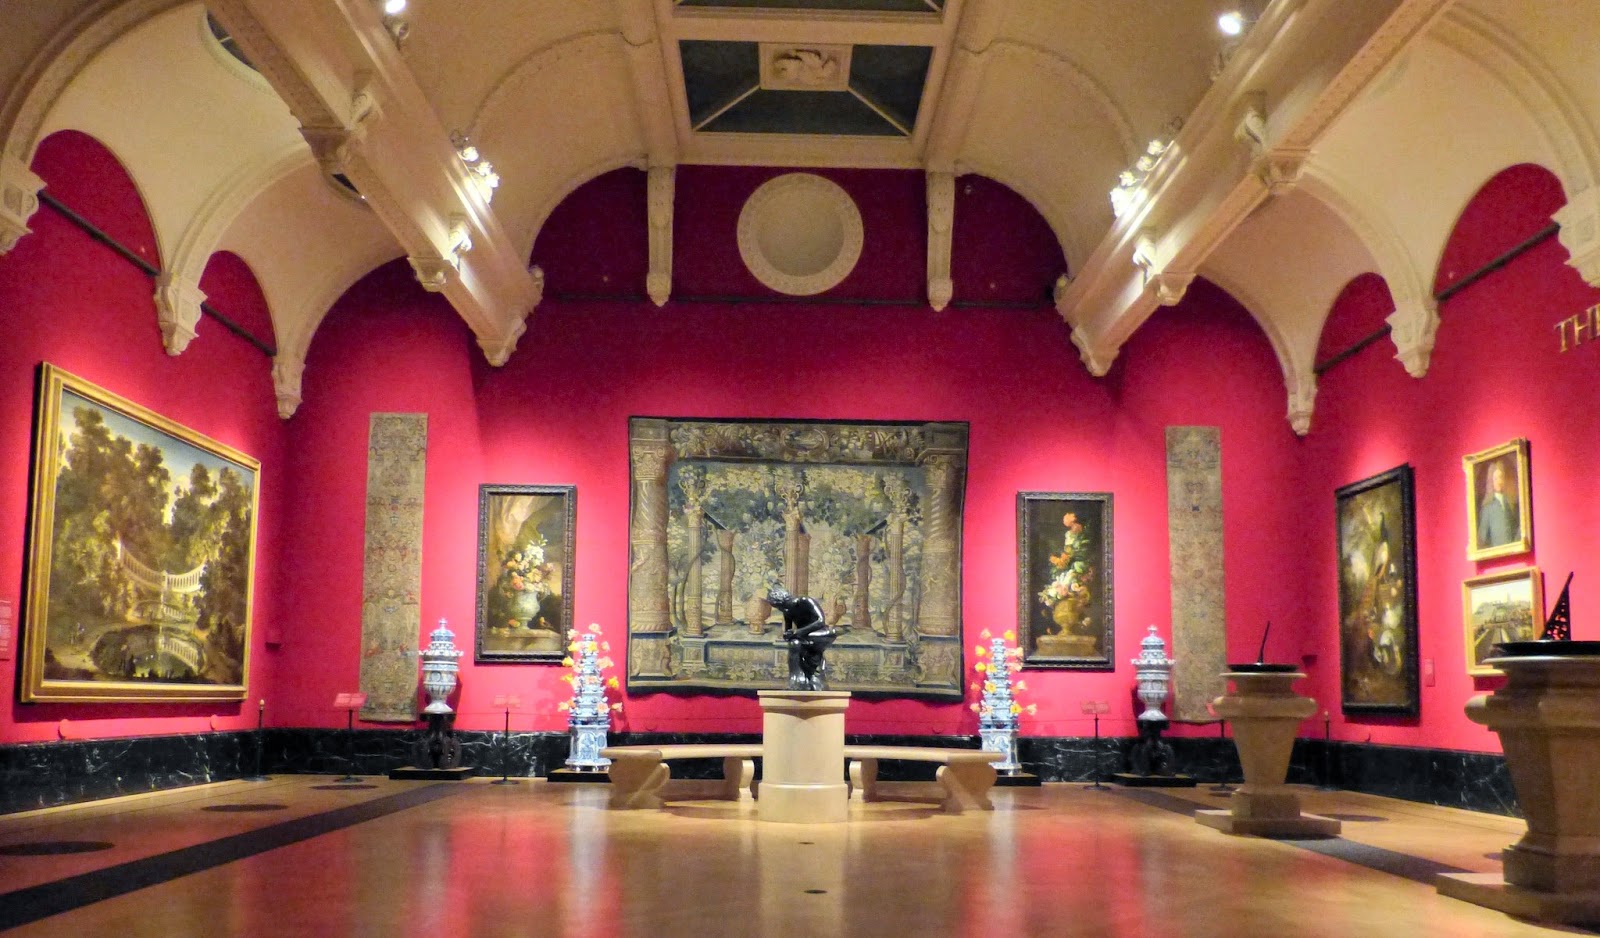 The Baroque Garden exhibition room